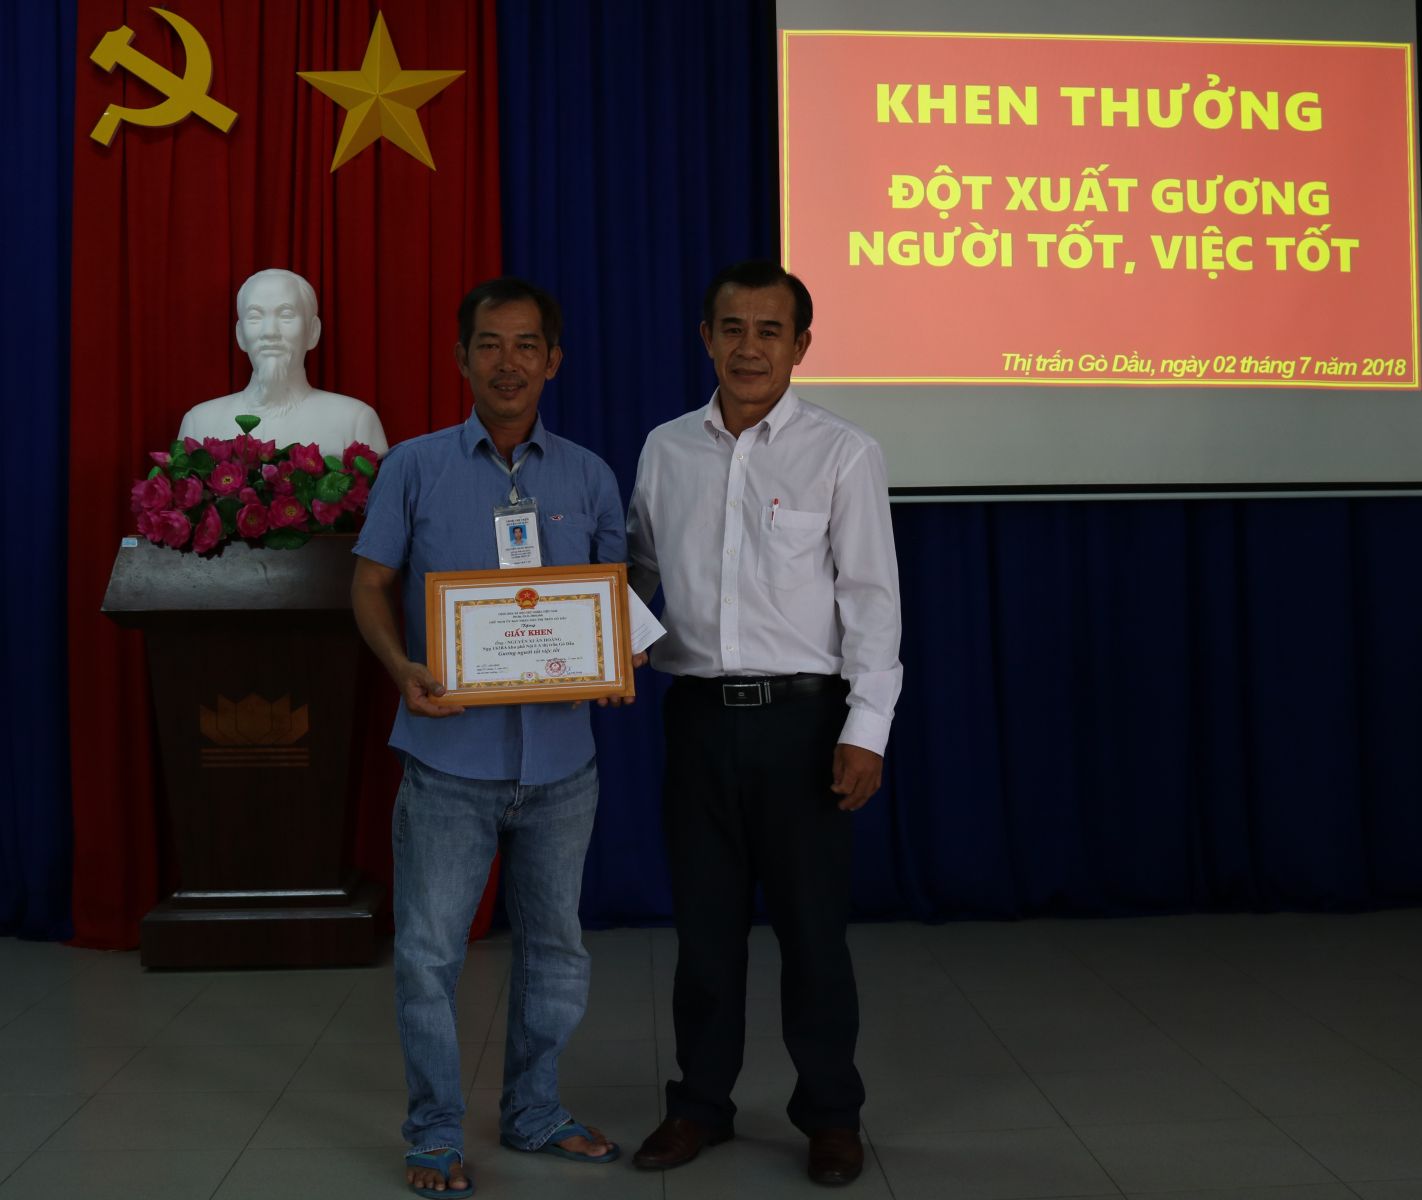 Điểm báo in Tây Ninh ngày 04.7.2018